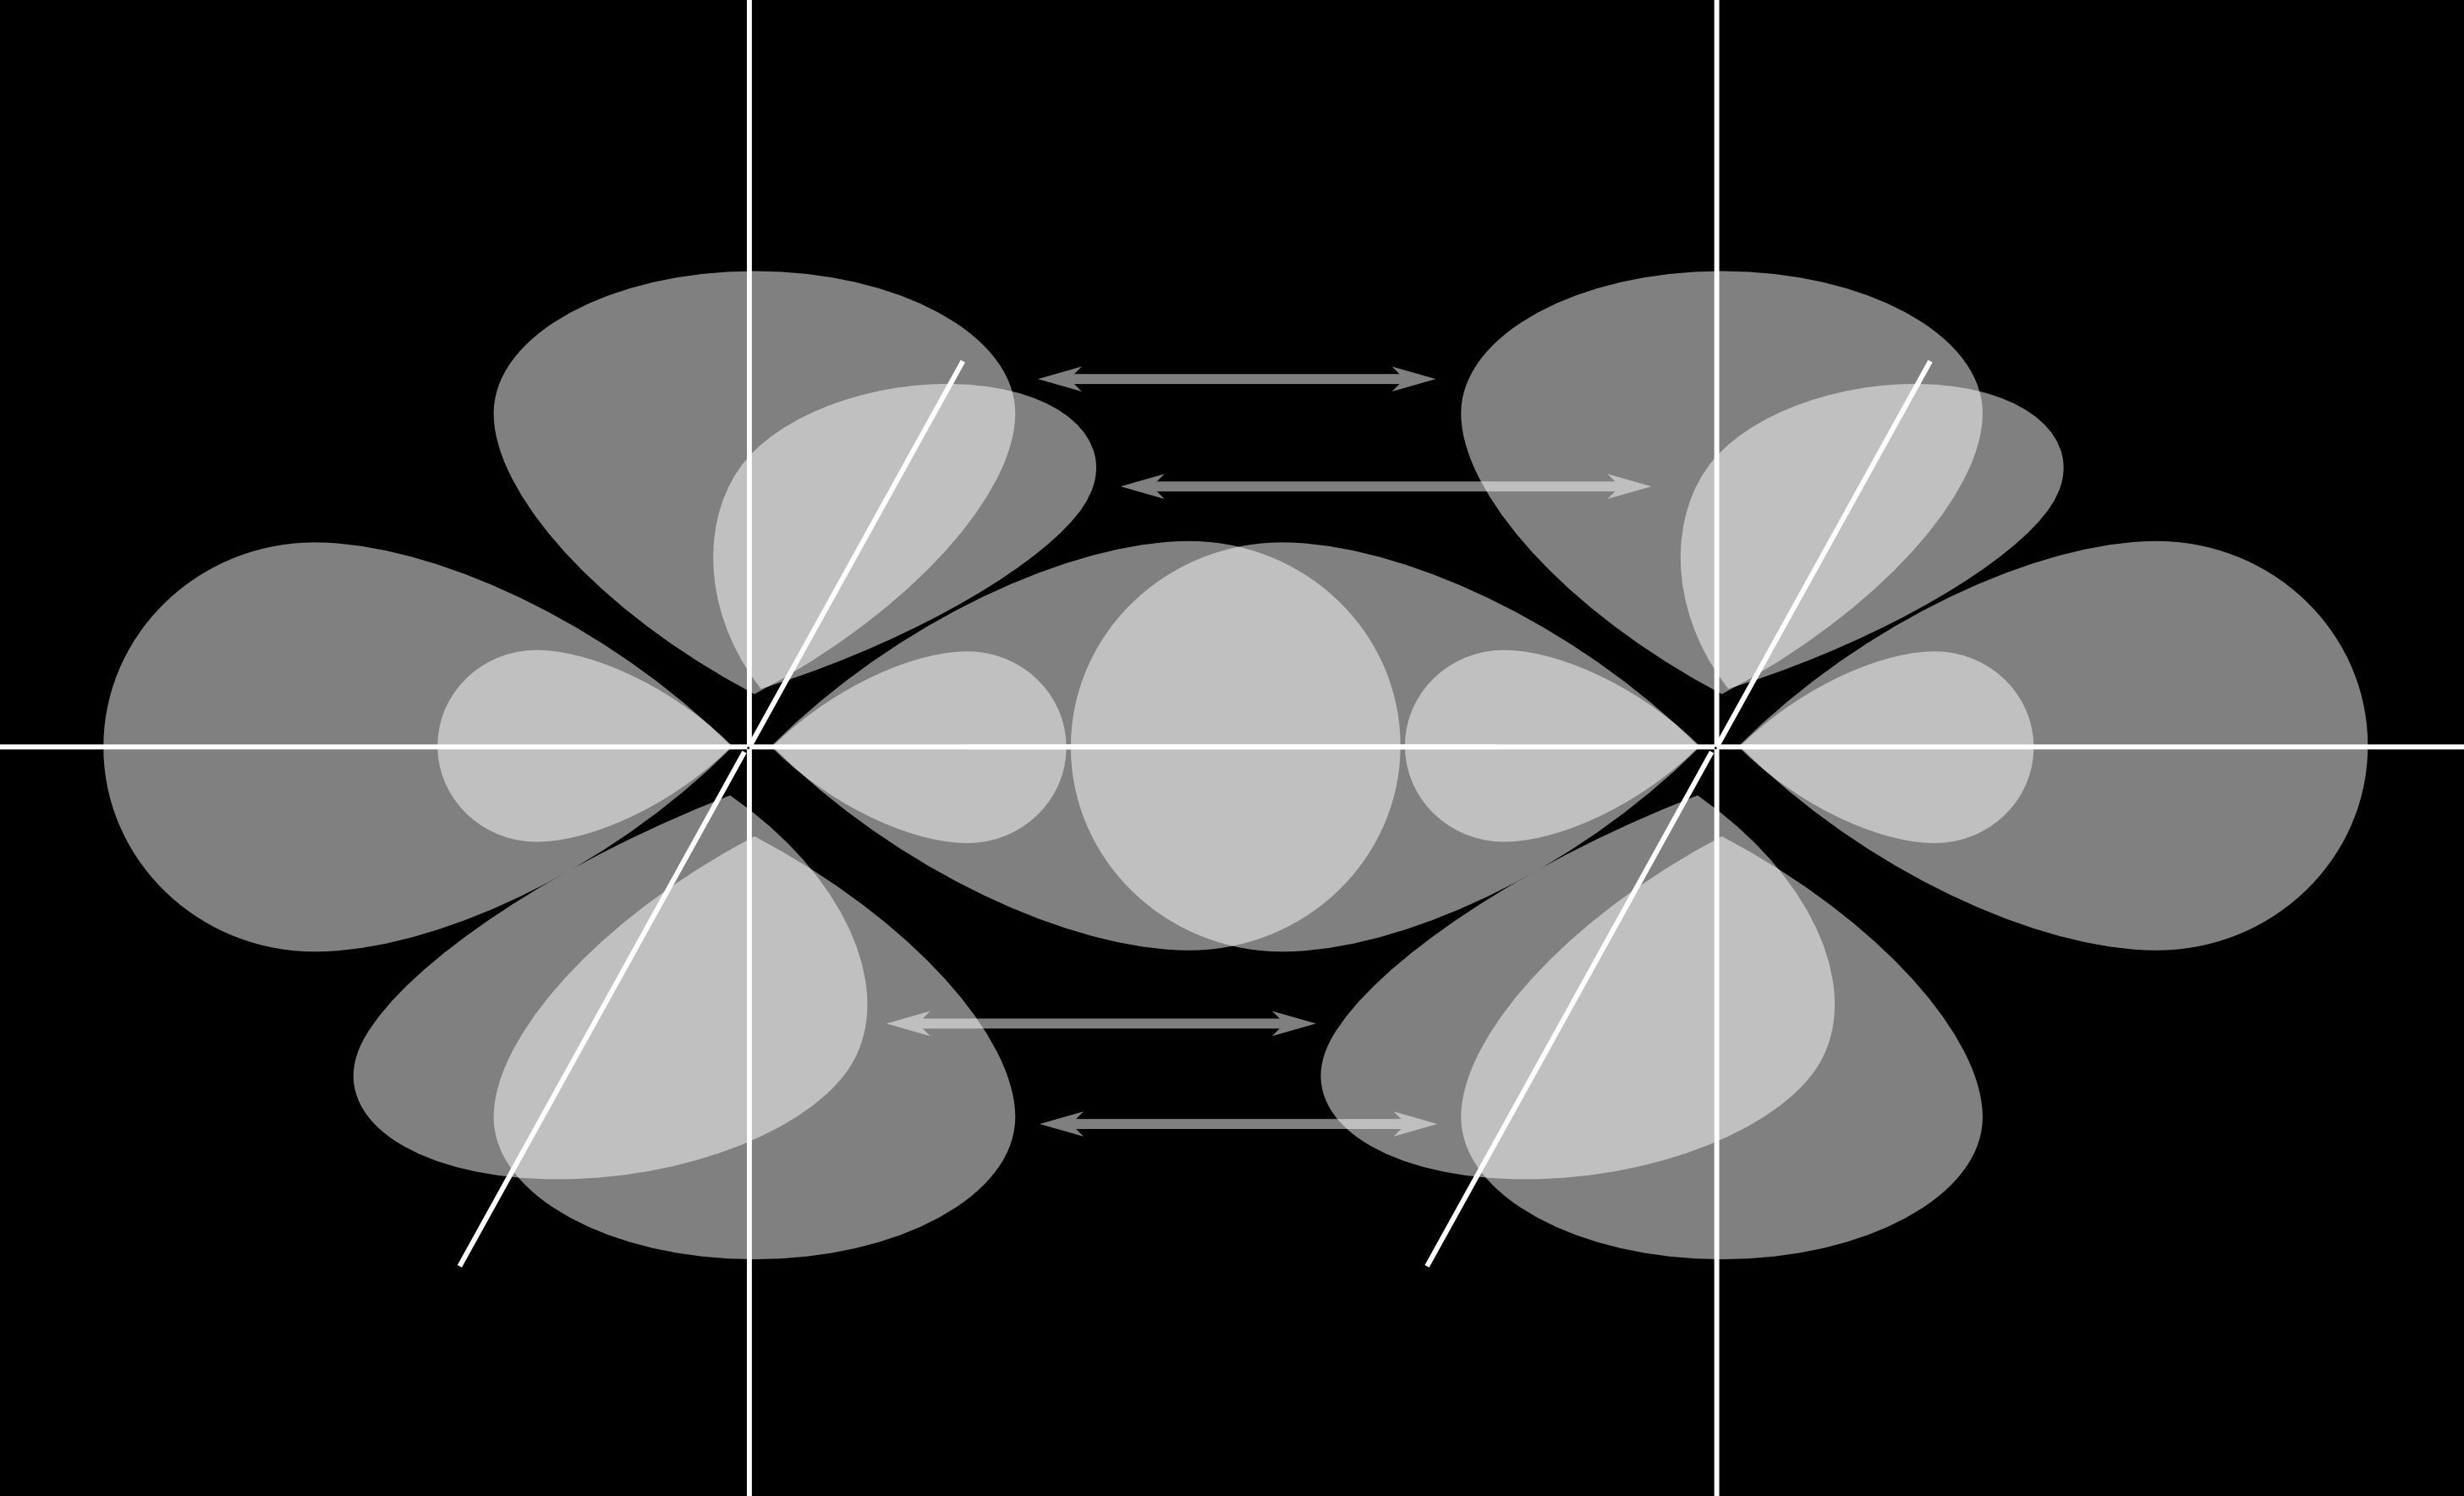 Abbildung 3.4: Mehrfachbindungen nach dem Valence-Bond-Modell. links: Doppelbindung, rechts: Dreifachbindung.